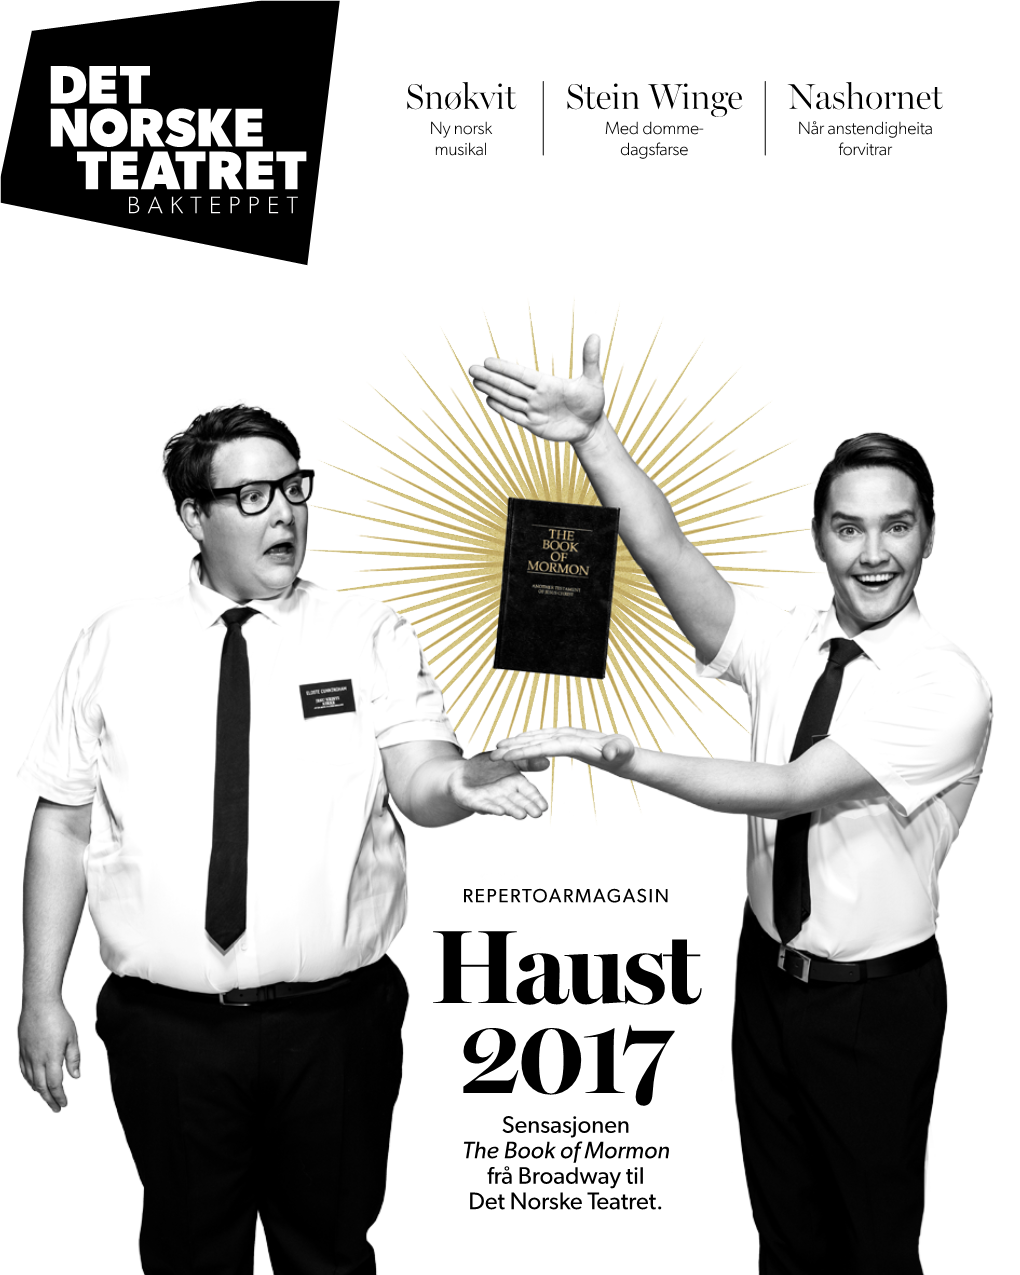 Haust 2017 Sensasjonen the Book of Mormon Frå Broadway Til Det Norske Teatret